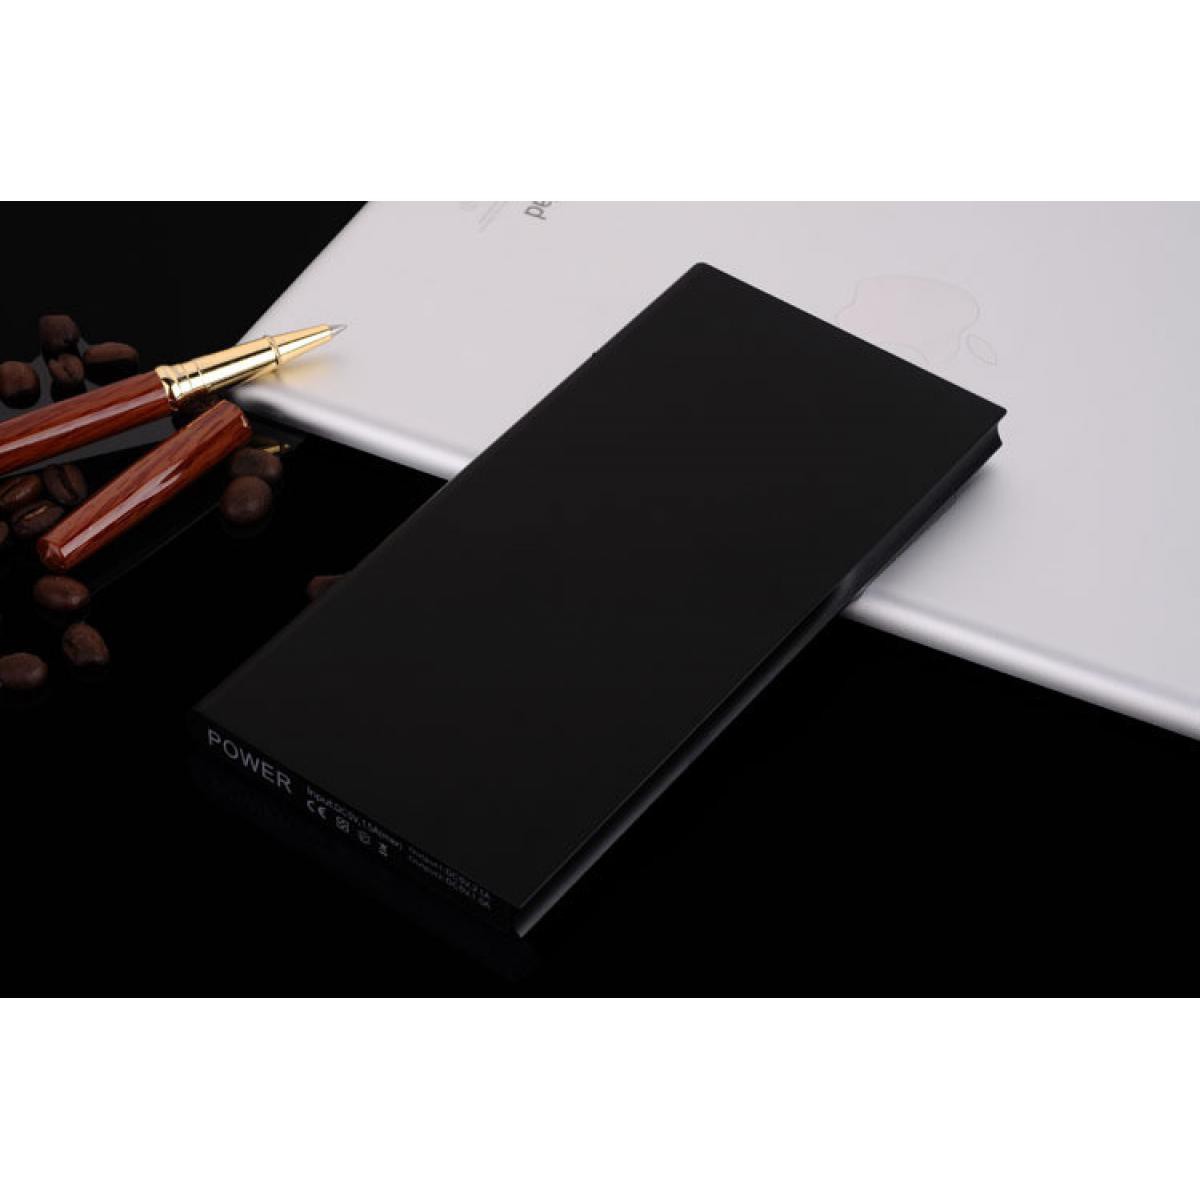 Shot - Batterie Externe Plate pour IPHONE 12 Chargeur Power Bank 6000mAh 2 Port USB (NOIR) - Chargeur secteur téléphone